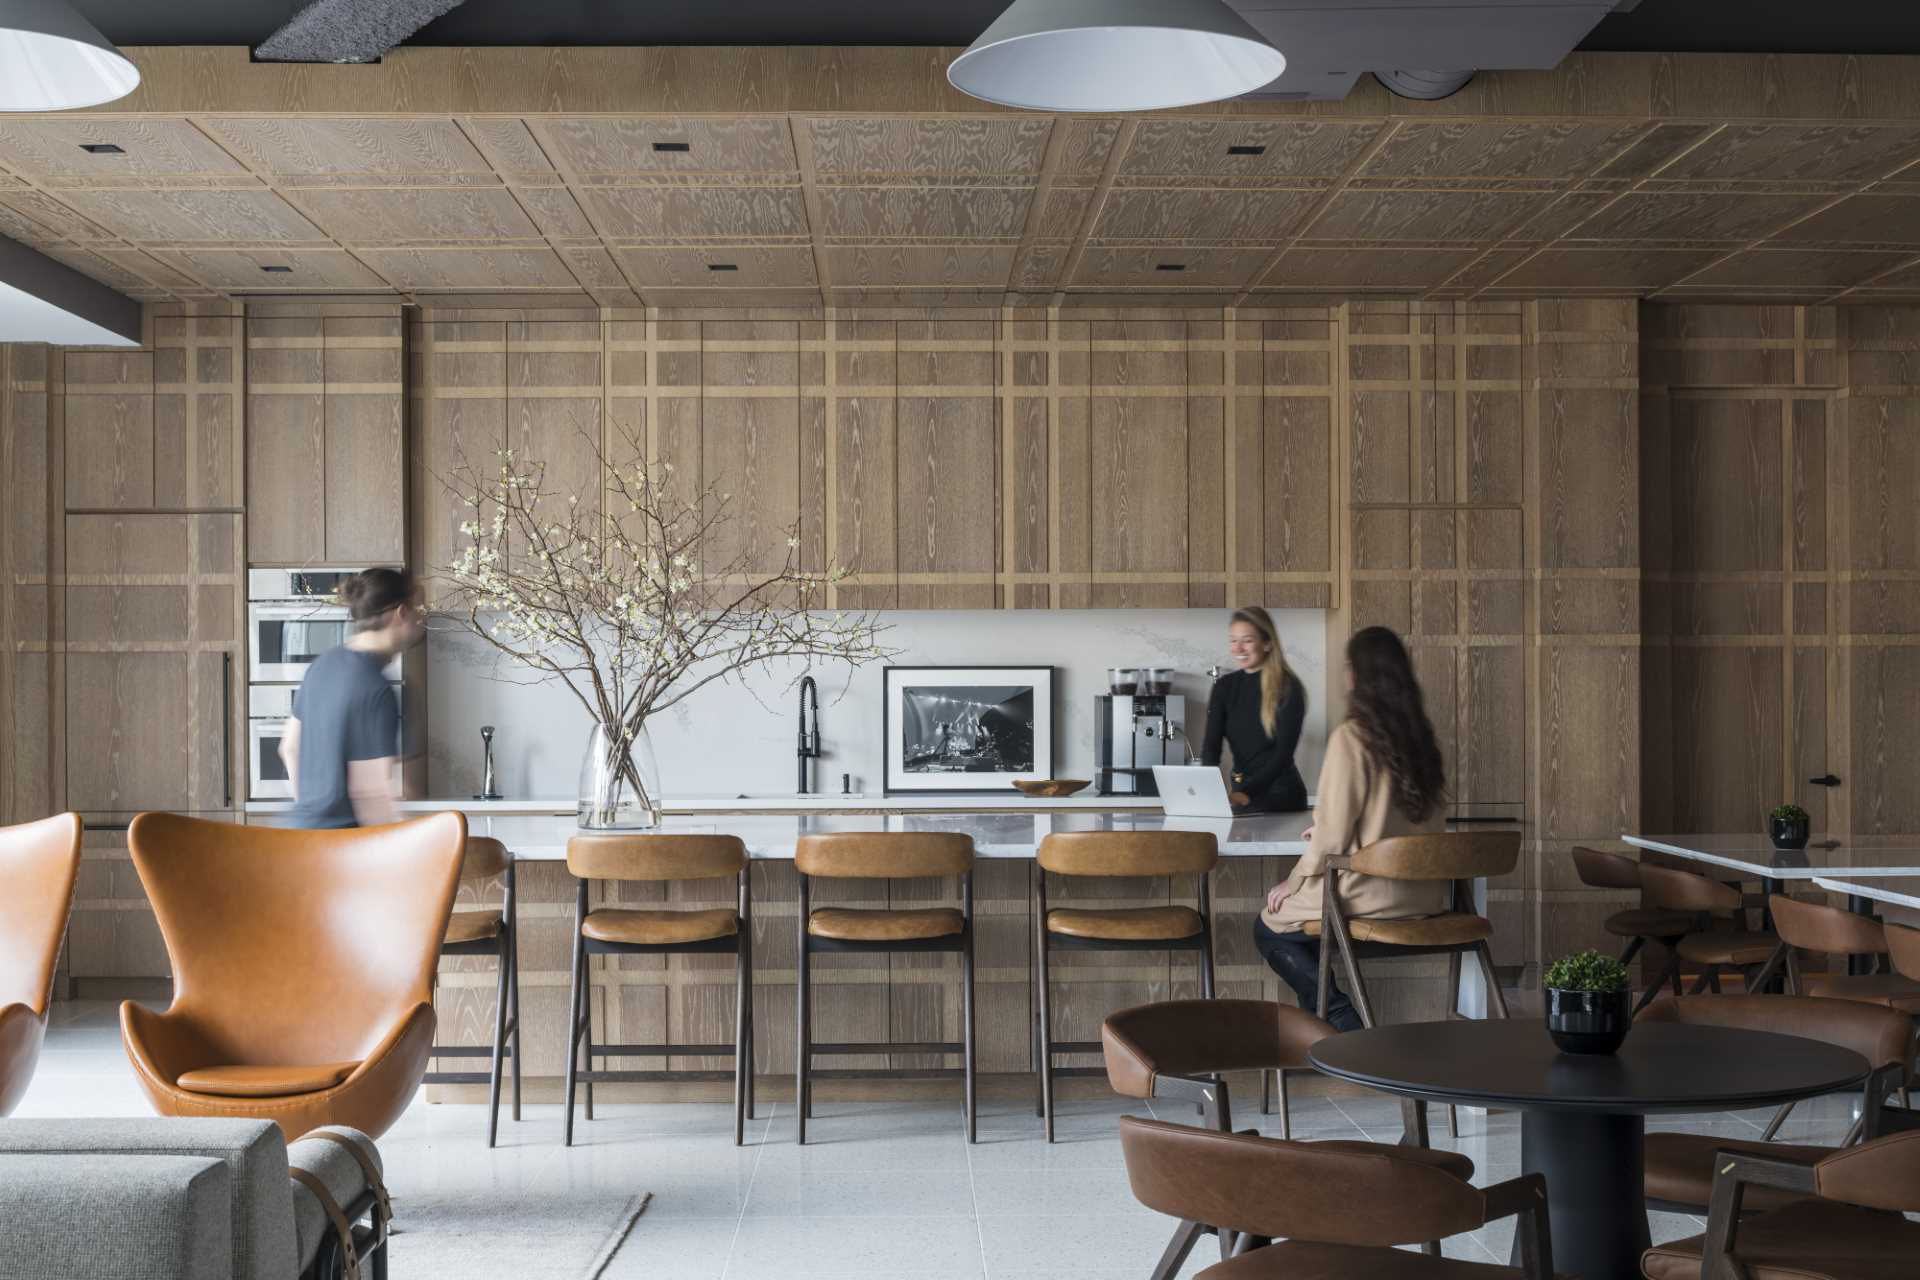 این آشپزخانه با روکش چوبی الهام گرفته از چهارخانه به ،وان یک قفسه چوب بلوط سفید رنگ طراحی شده بود که چوب تمام کابینت ها، لوازم خانگی، درها و جزیره را می پوشاند.